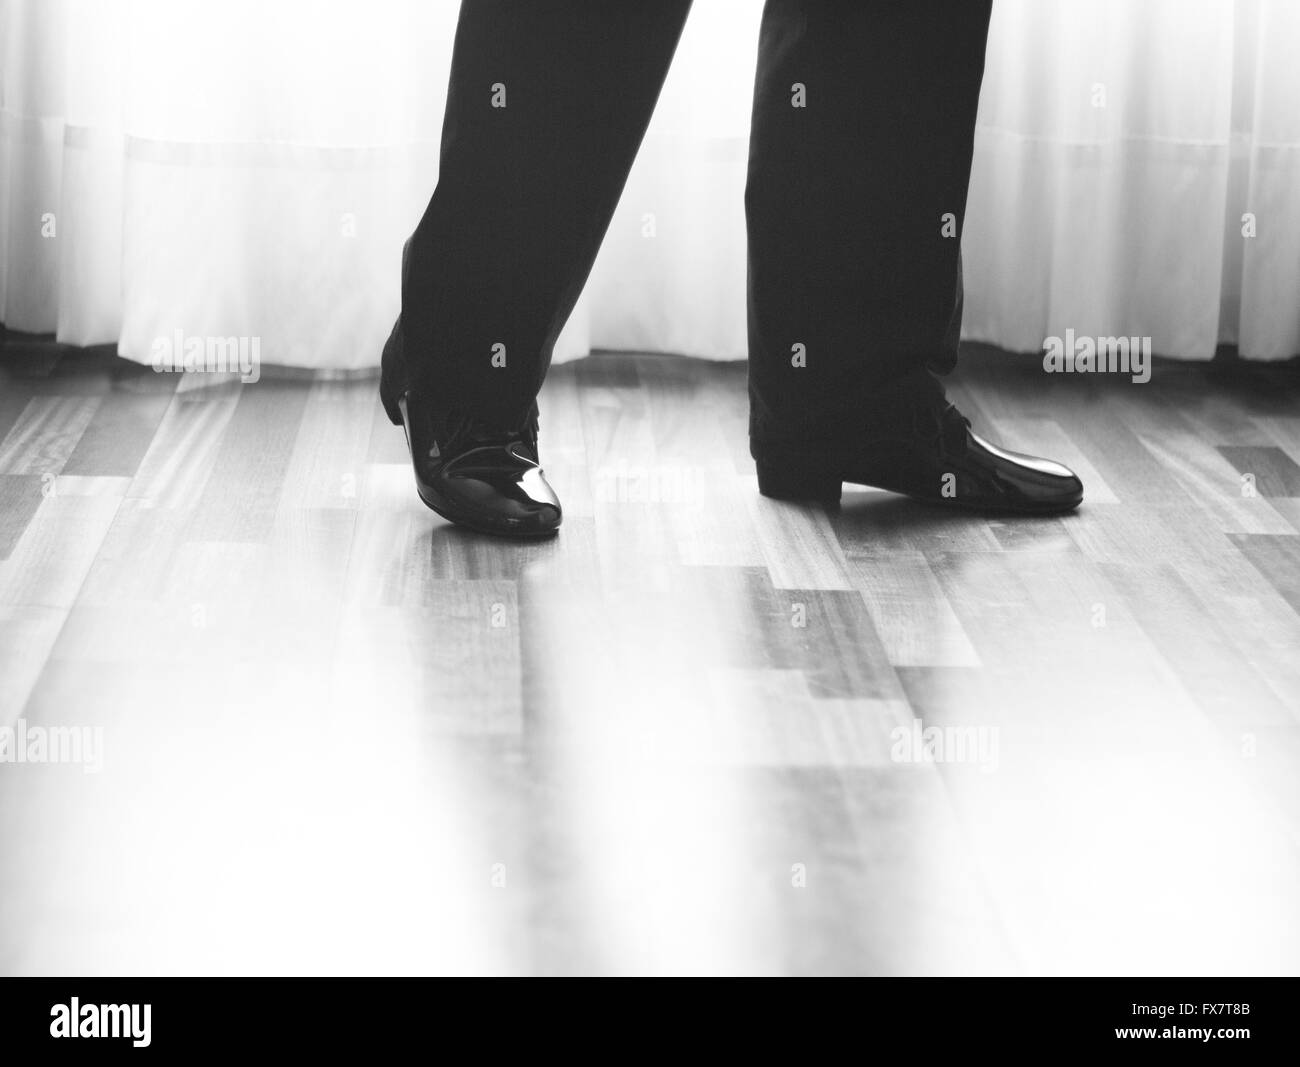 Salón de masculino, estándar, deporte, baile latino y los pies y los zapatos de bailarina de Salsa en academia de baile de la escuela sala de ensayo bailar salsa Fotografía de